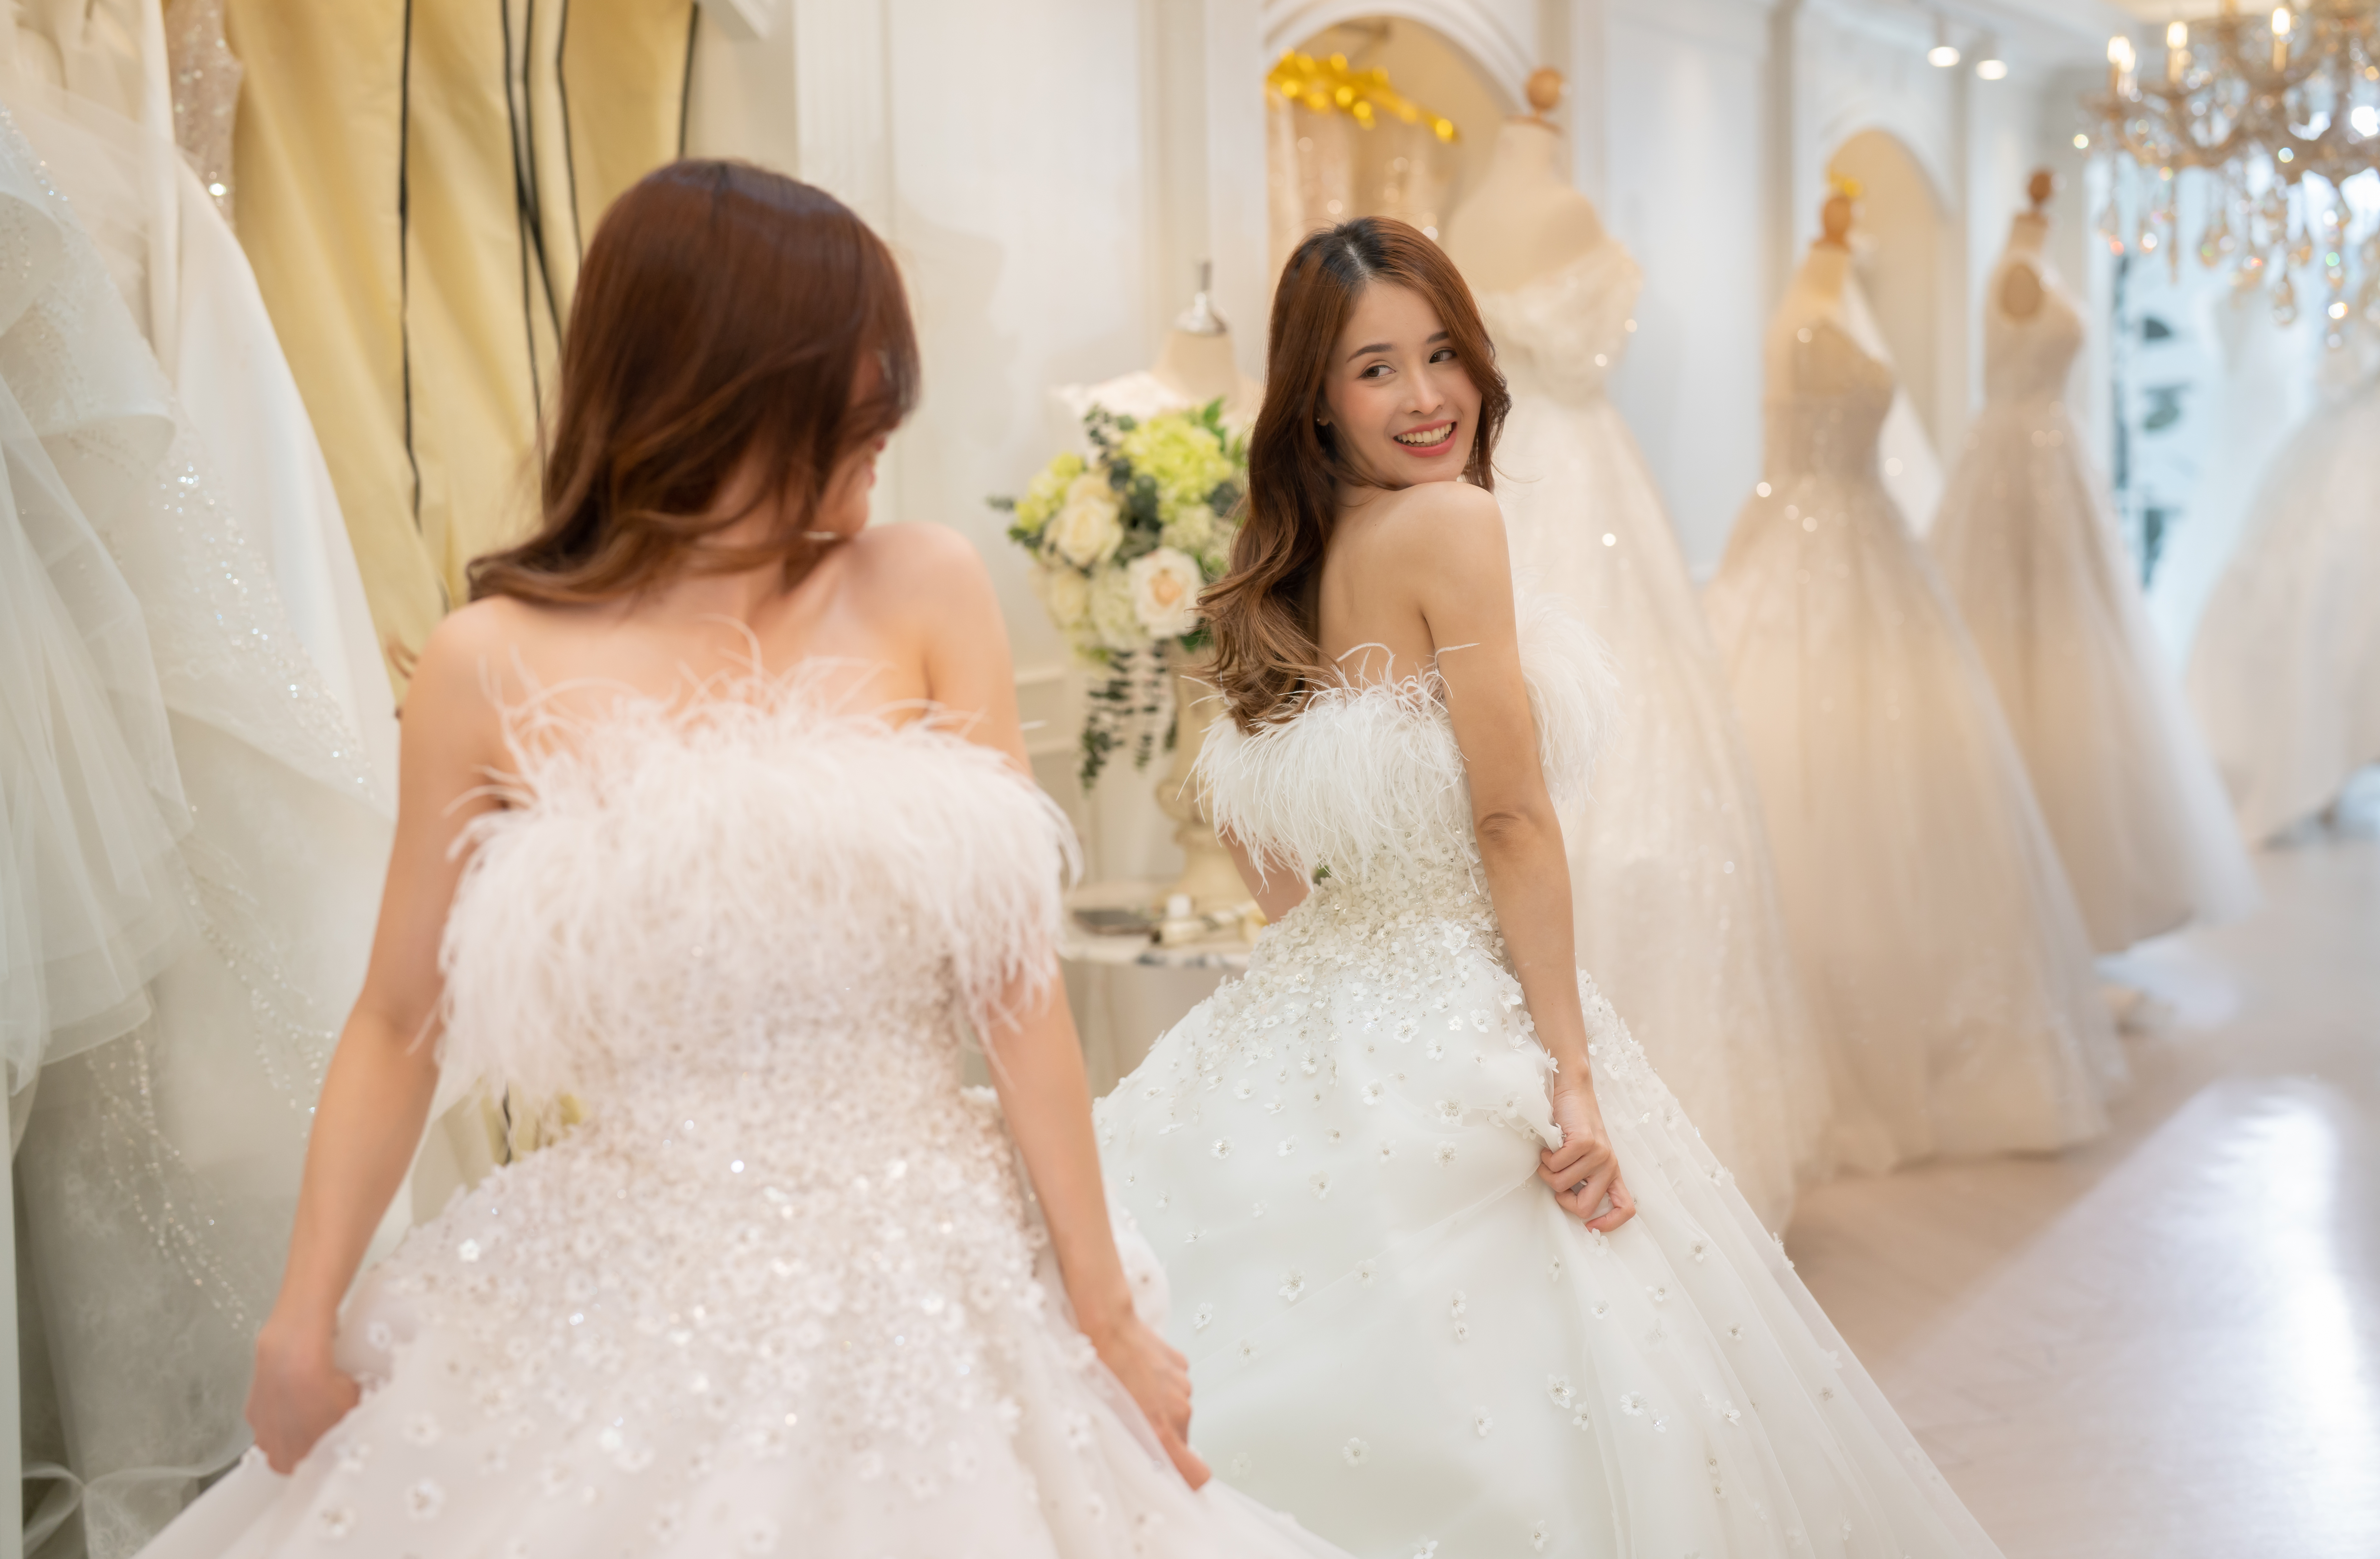 Der Schneider entwirft das Hochzeitskleid für die Braut | Quelle: Getty Images